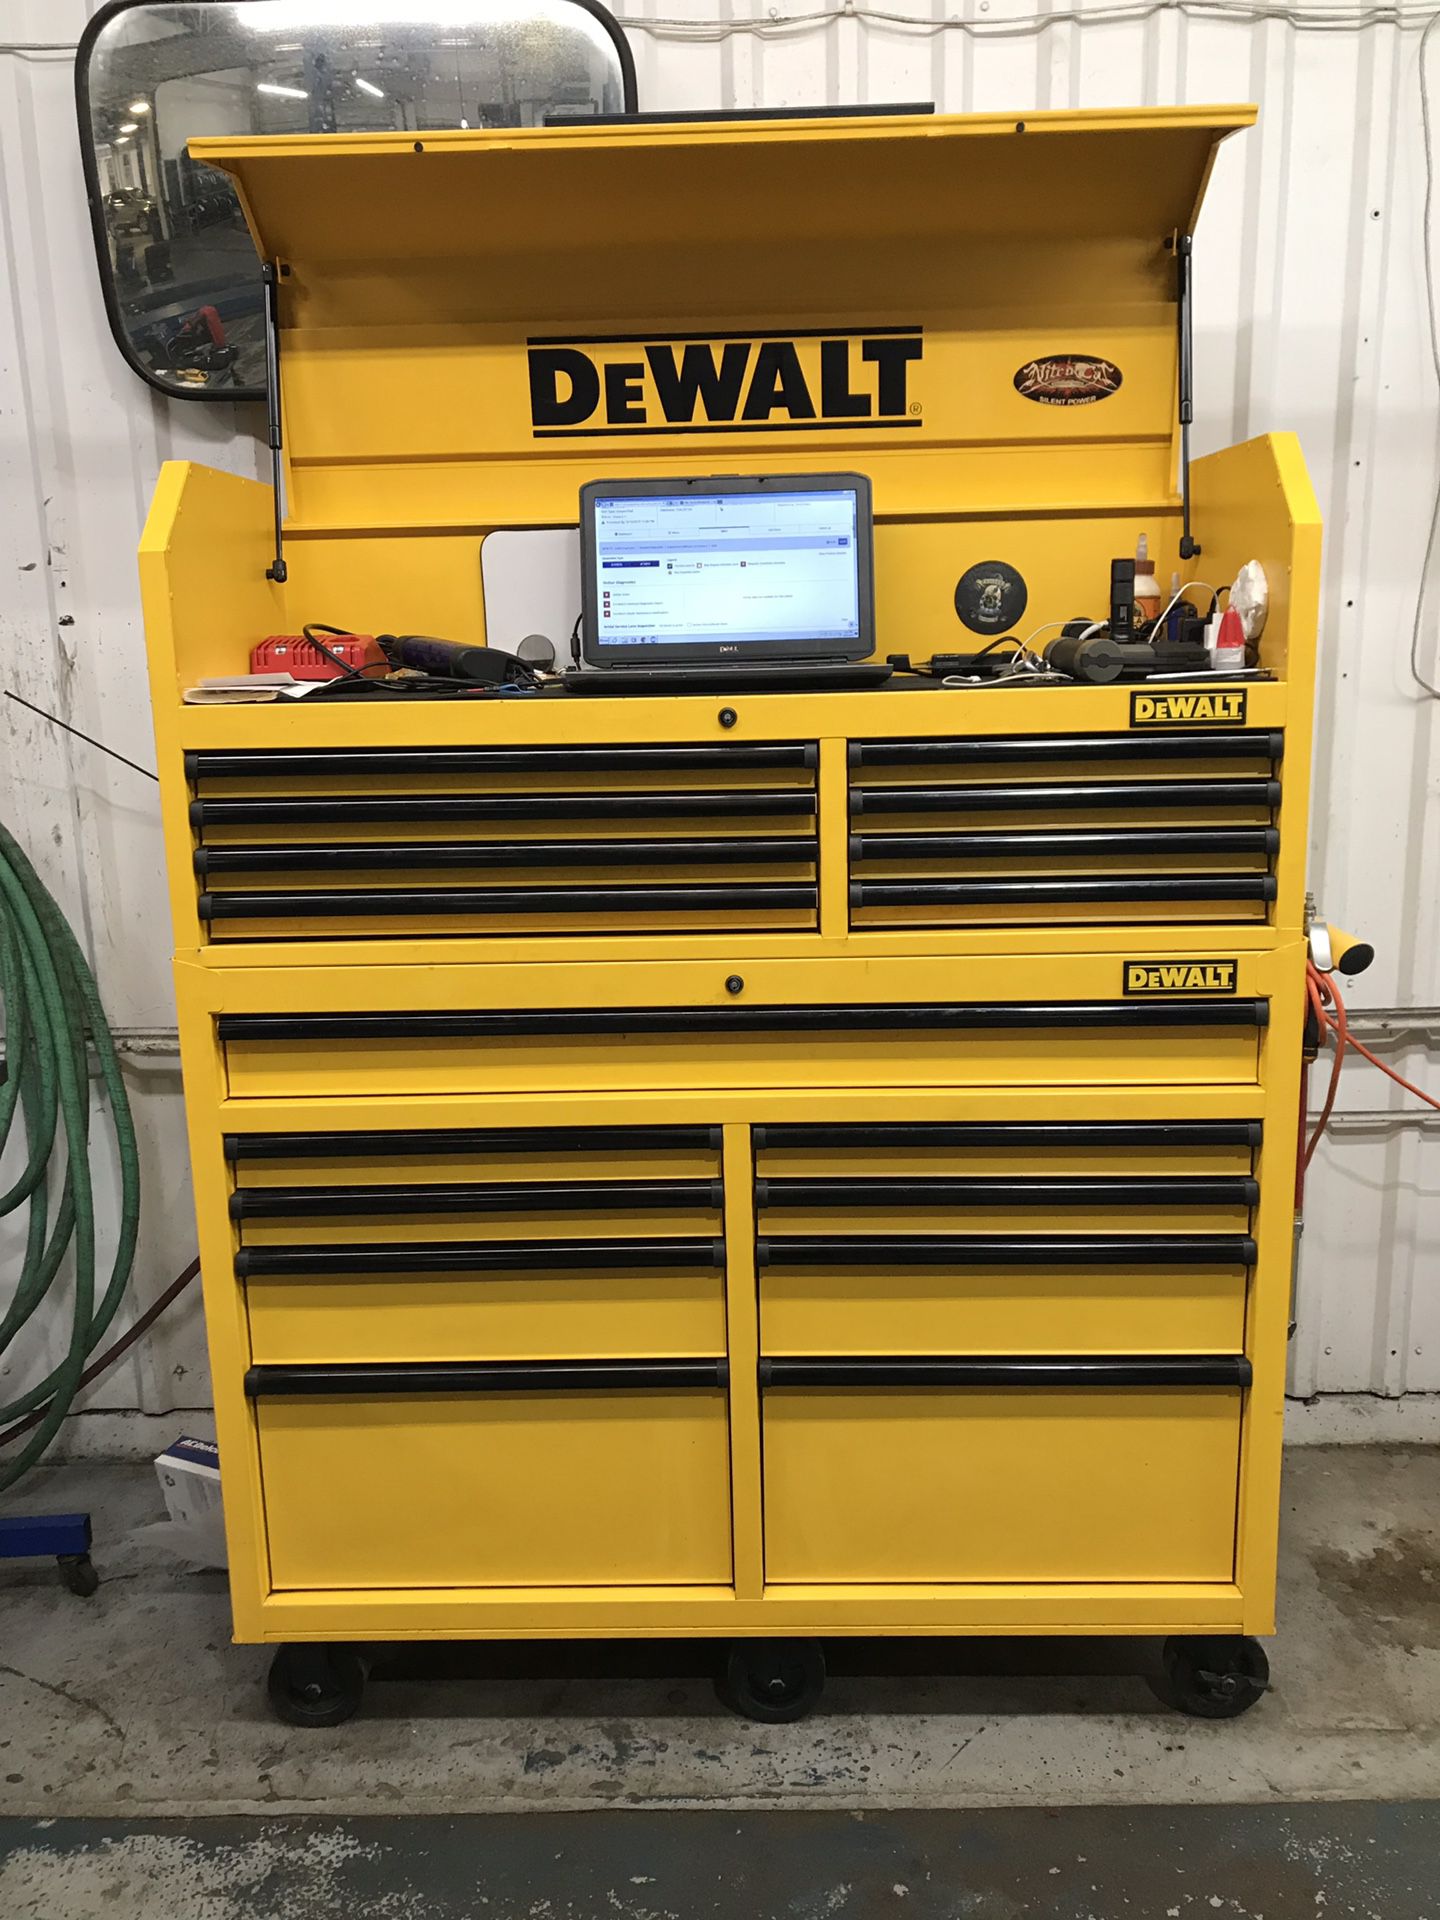 Dewalt tool chest with keys!